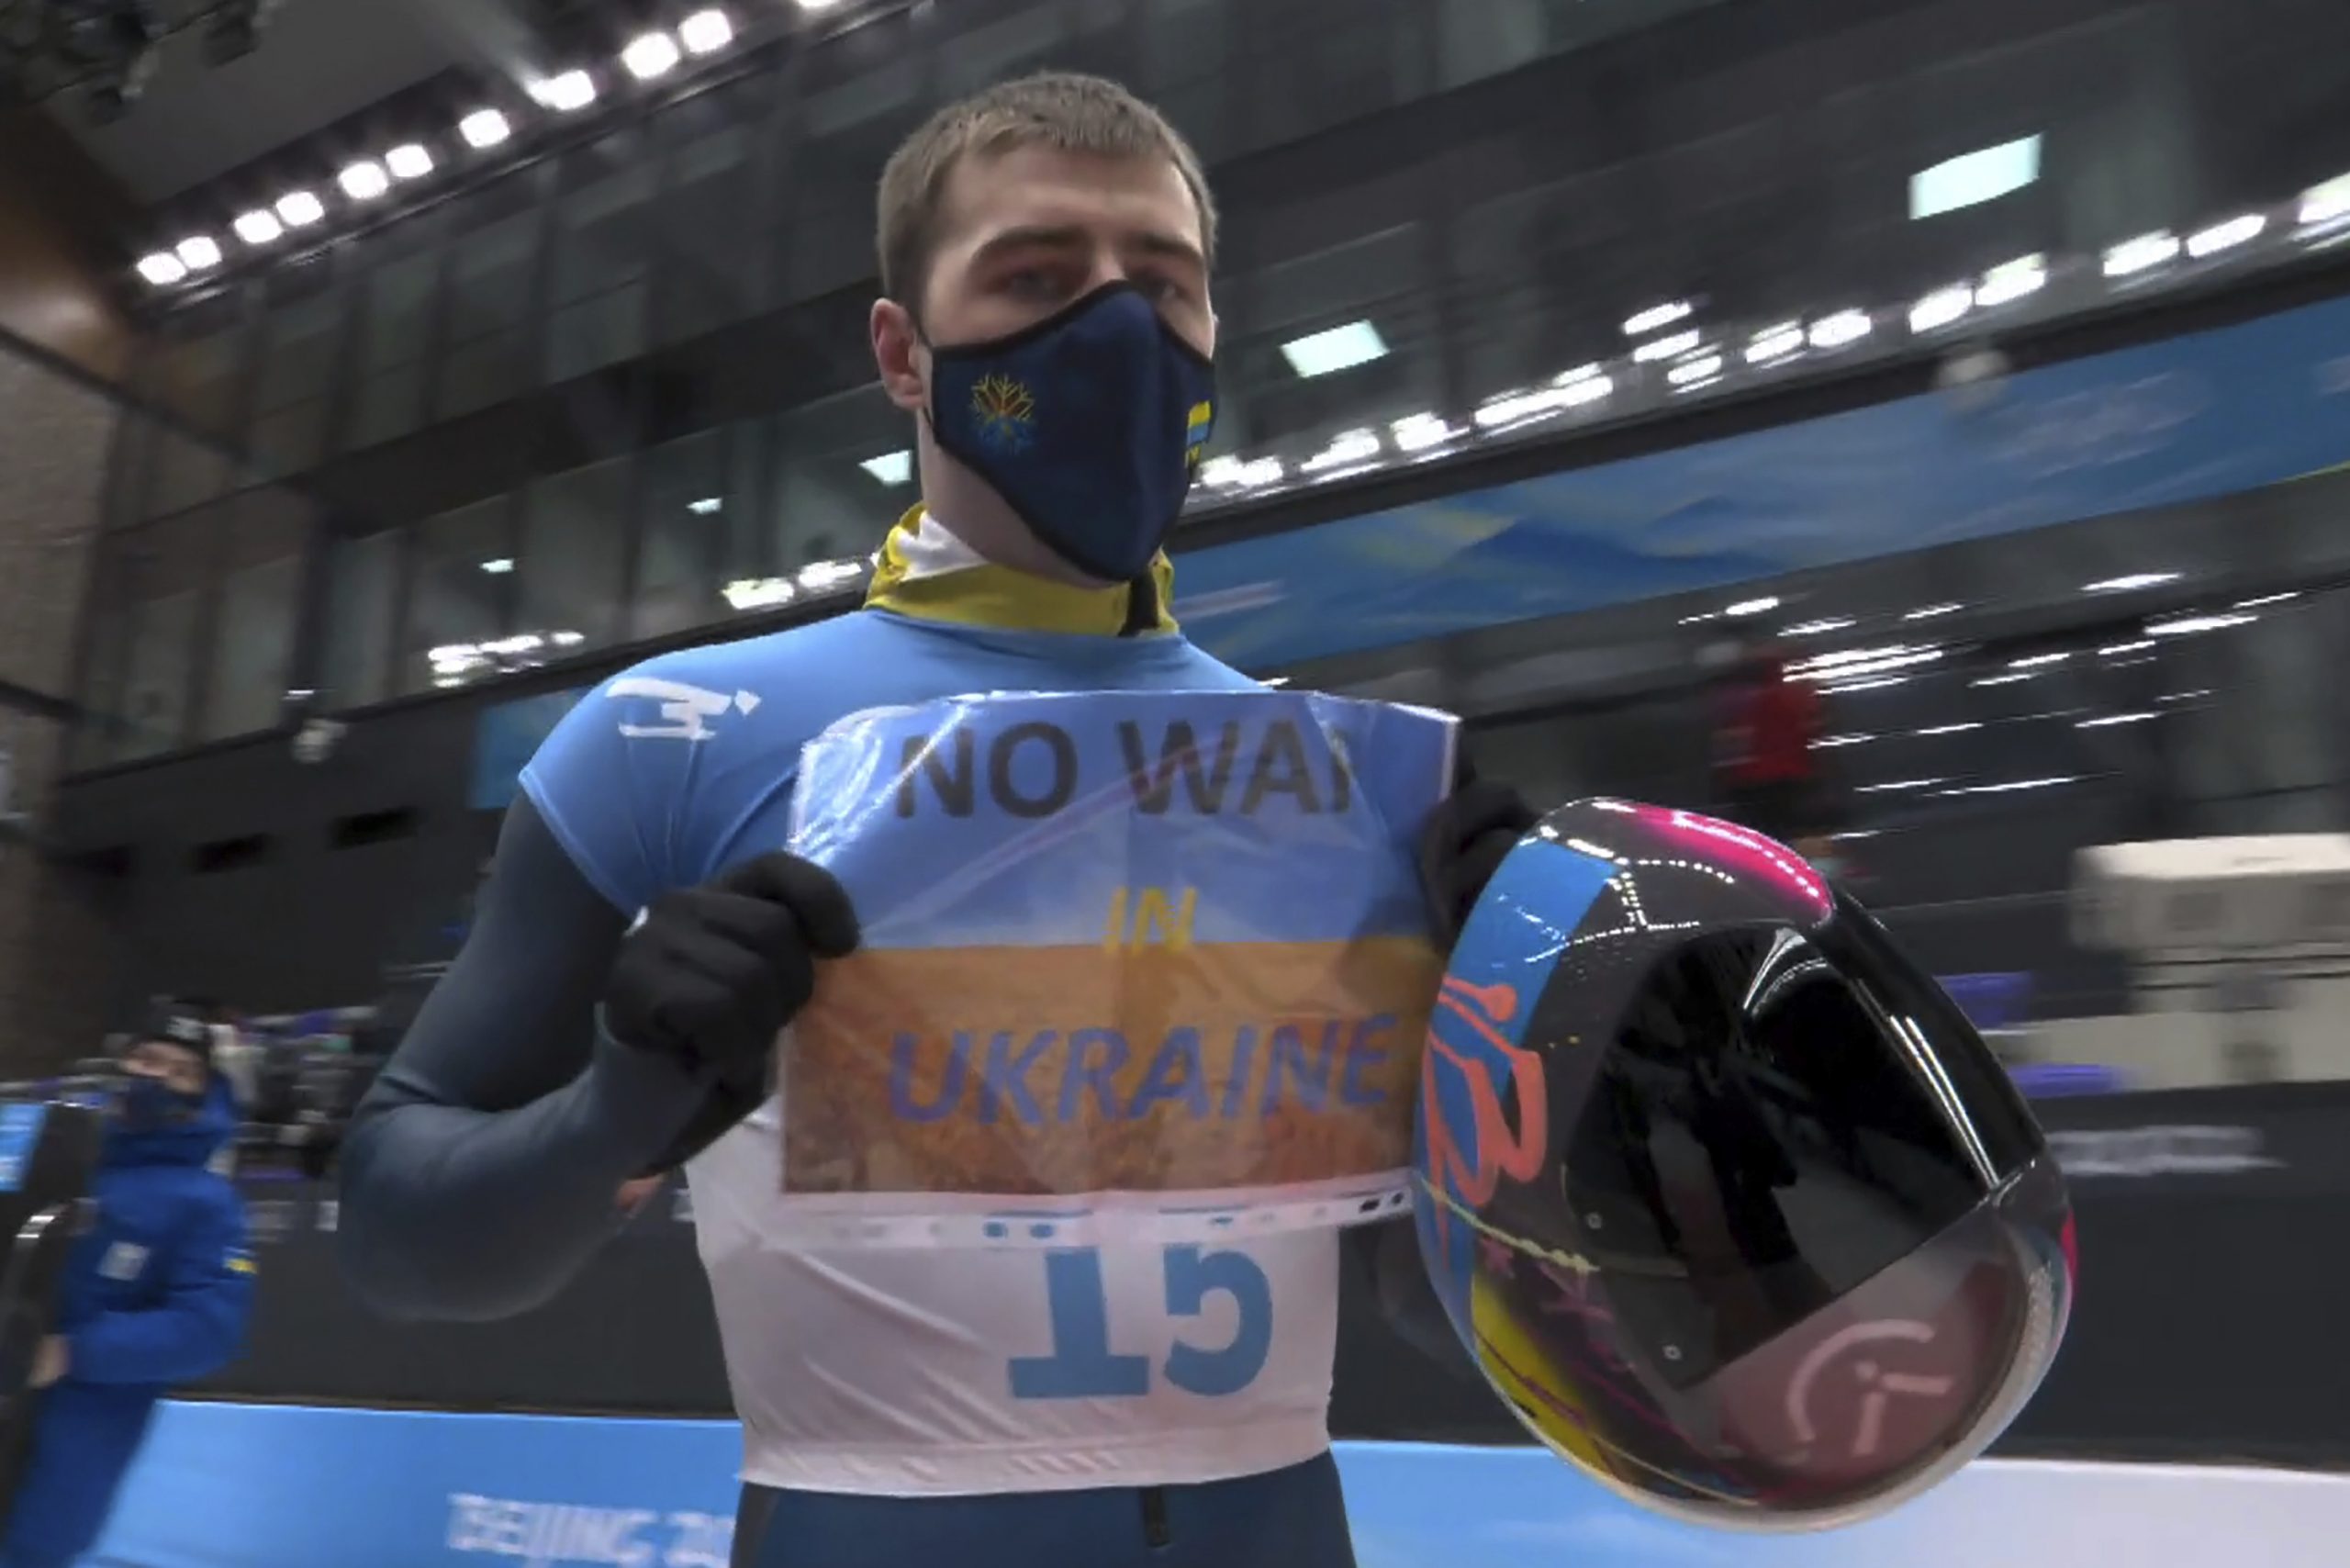 “乌克兰不要战争” 冬奥赛车手抗议